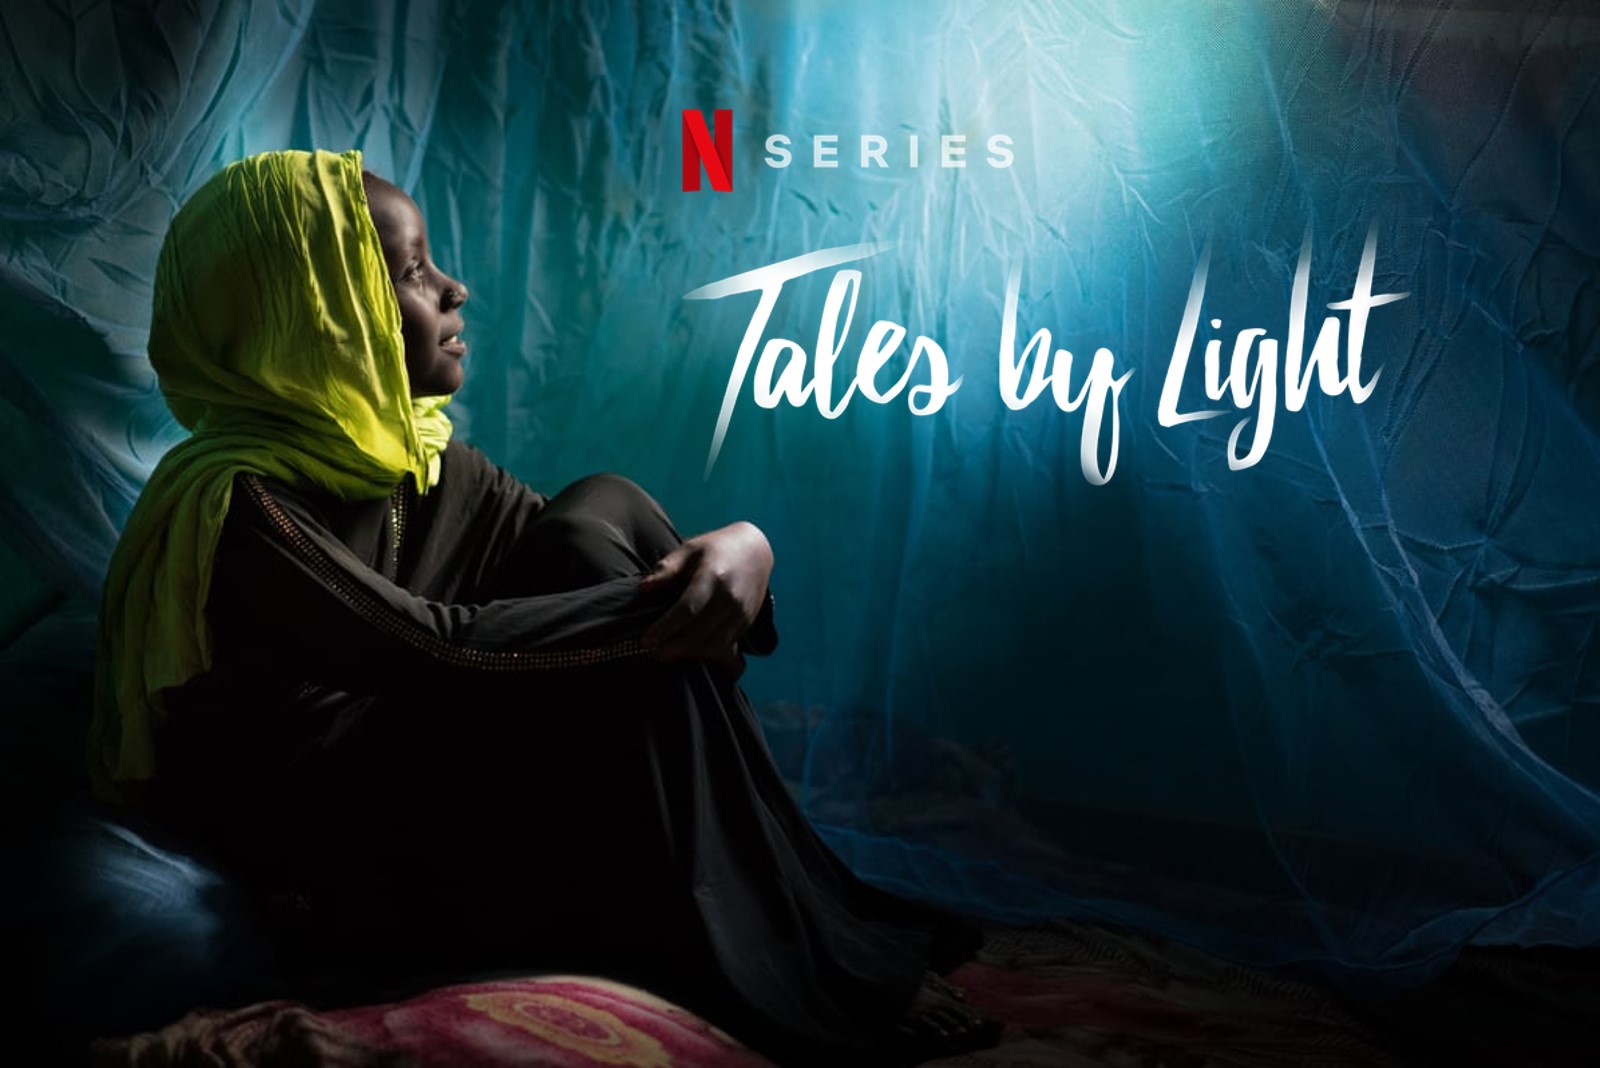 Tales by Light é uma série documentário sobre fotografia, viagem, natureza, vida selvagem, aventuras, antropologia, rituais, culturas, curiosidades e histórias, disponível na Netflix e foi produzida pela Canon Australia e National Geografic